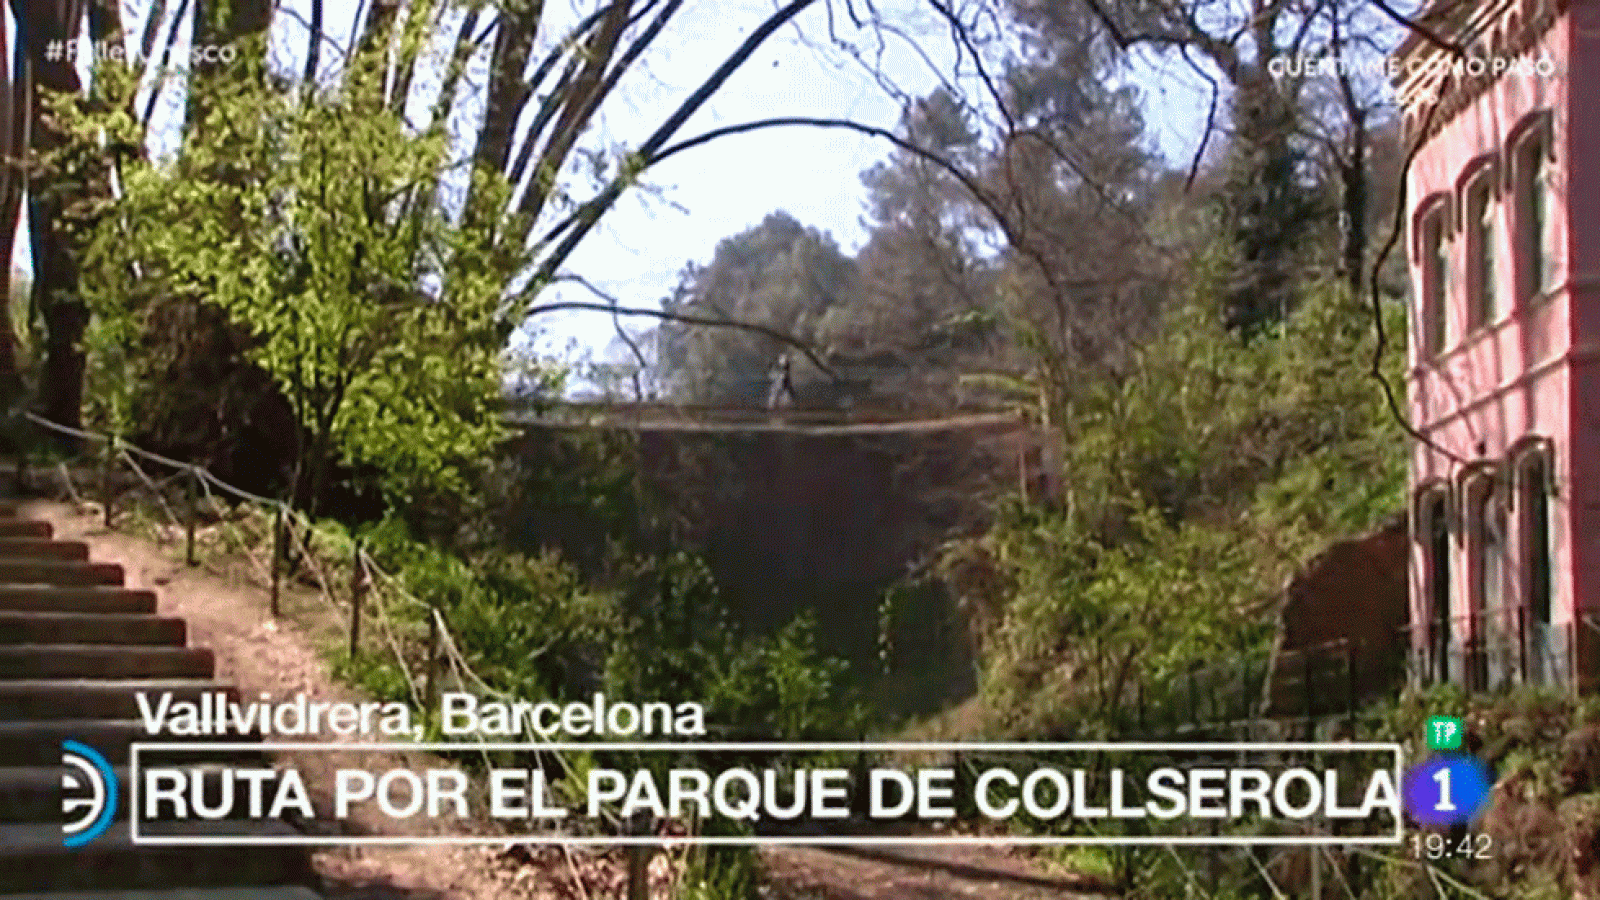 España Directo - Ruta por el parque de Collserola, Barcelona